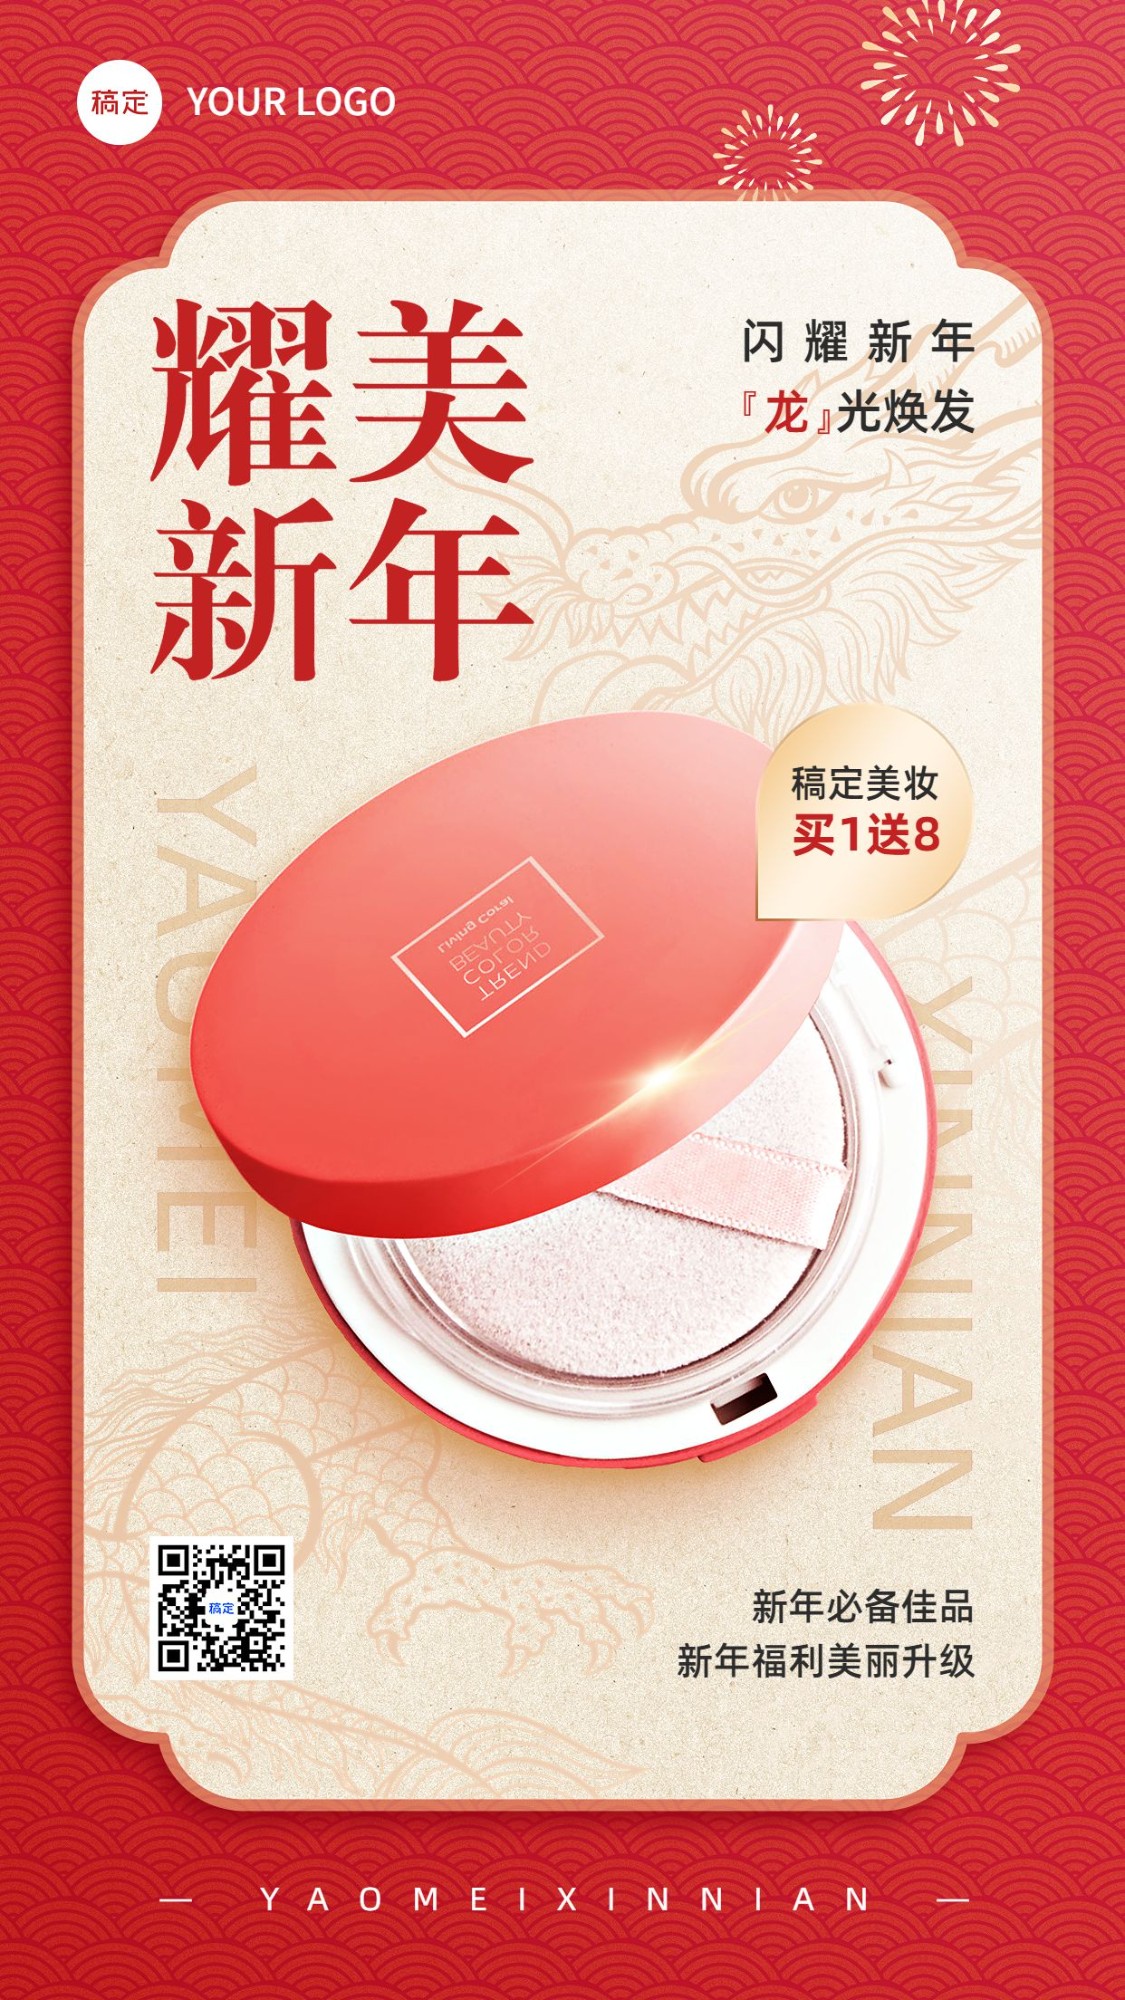 春节龙年美容美妆节日营销产品展示手机海报